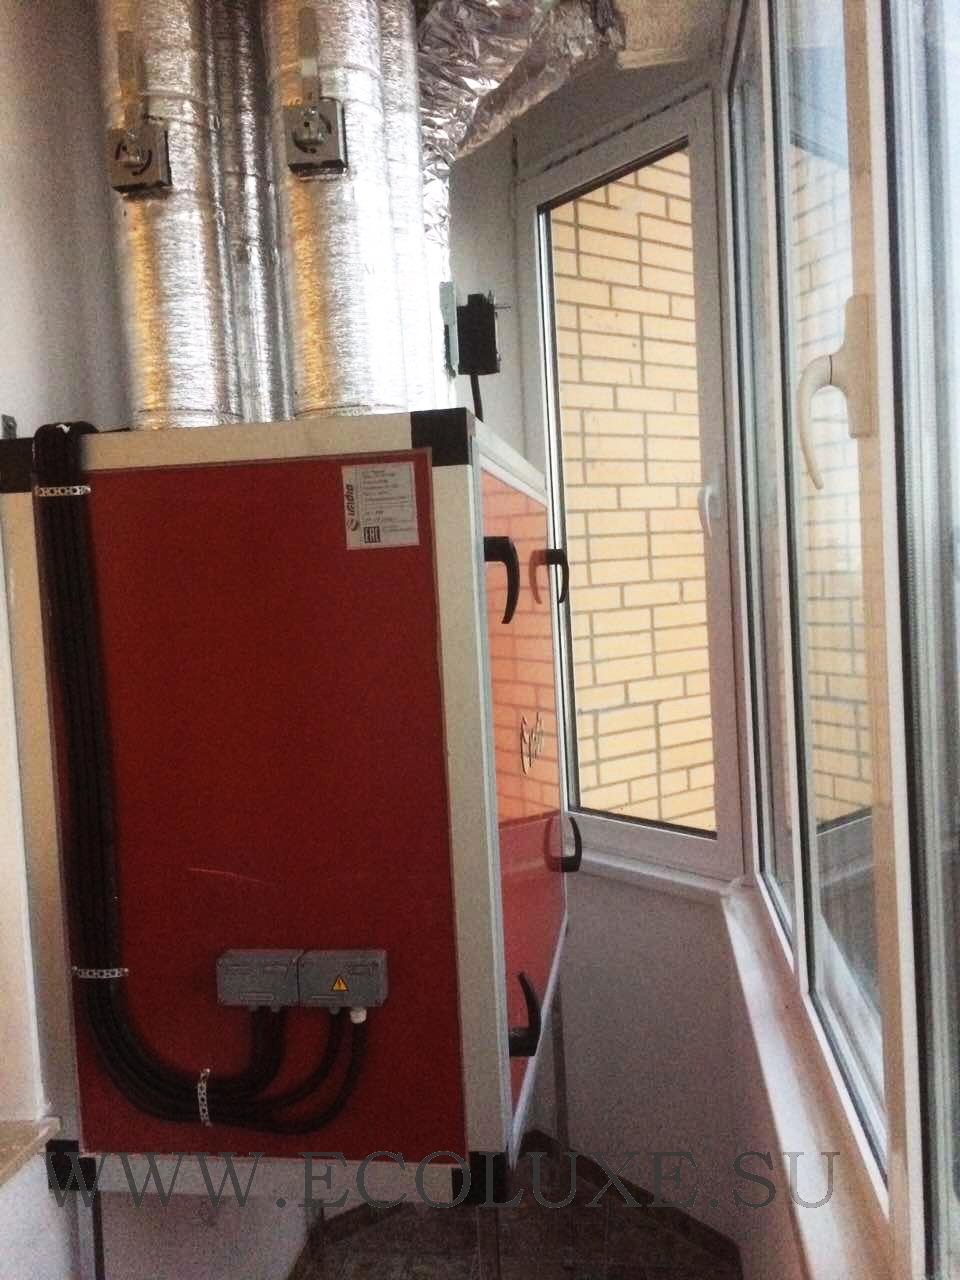 Монтаж системы приточно-вытяжной вентиляции в квартире на базе рекуператора тепла и влаги Ecoluxe (IRRIDIO)